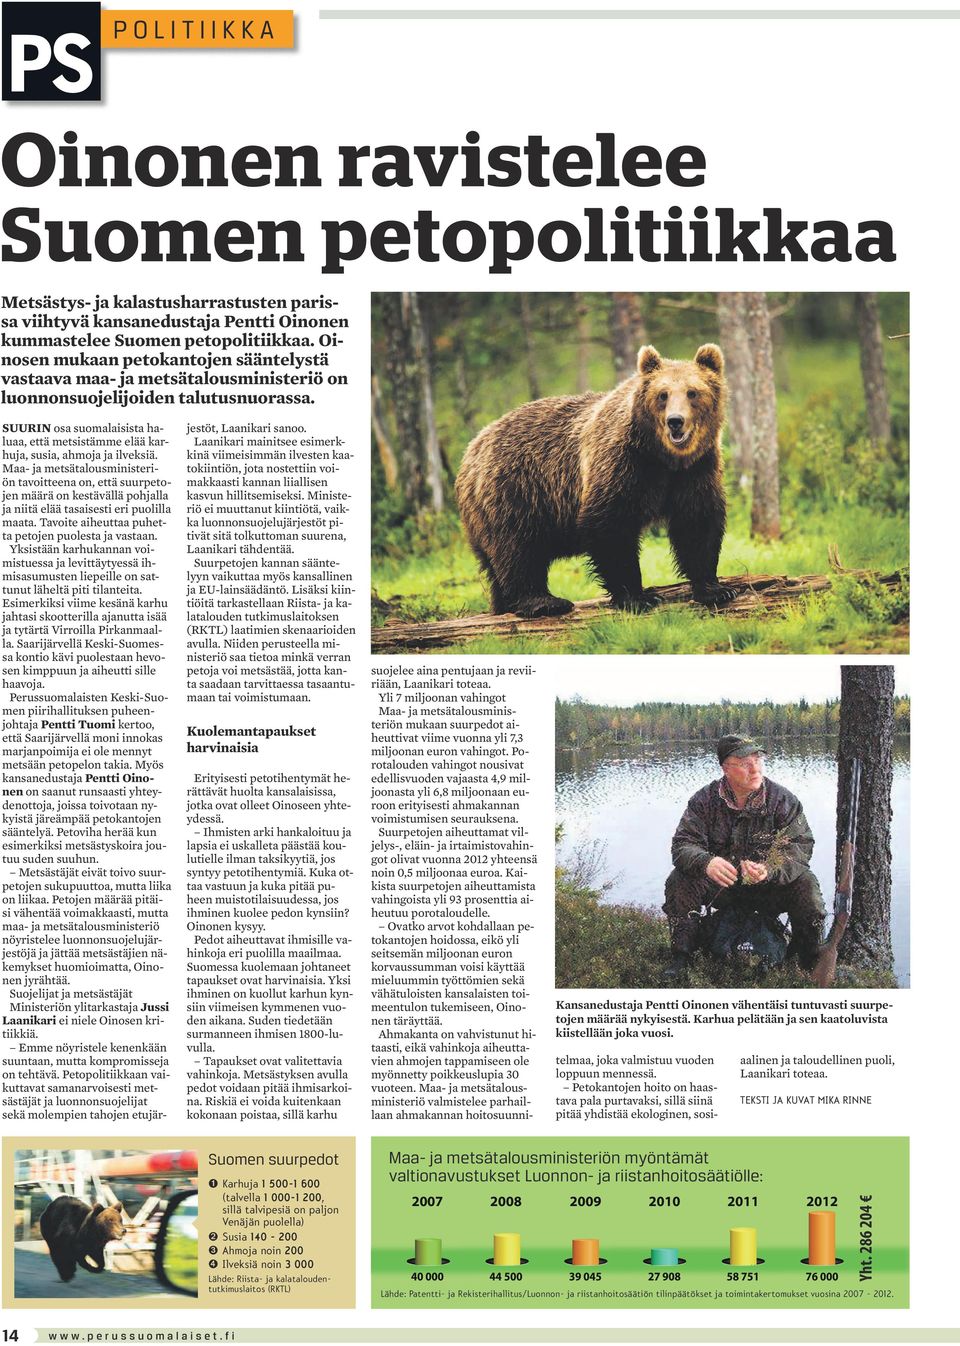 SUURIN osa suomalaisista haluaa, että metsistämme elää karhuja, susia, ahmoja ja ilveksiä.